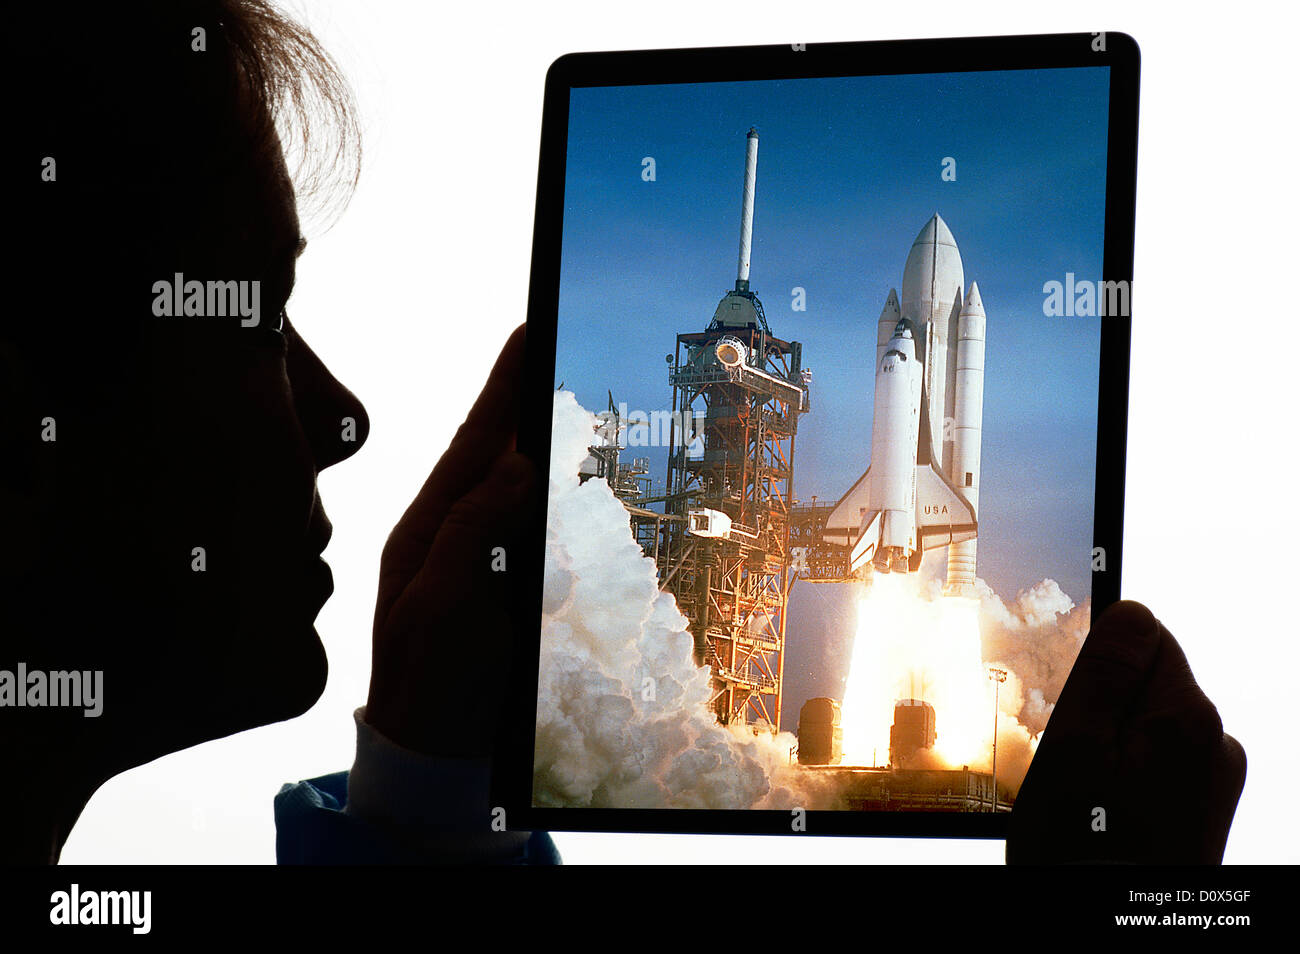 Ingénieur femme avec la NASA navette en photo sur tablette numérique Banque D'Images